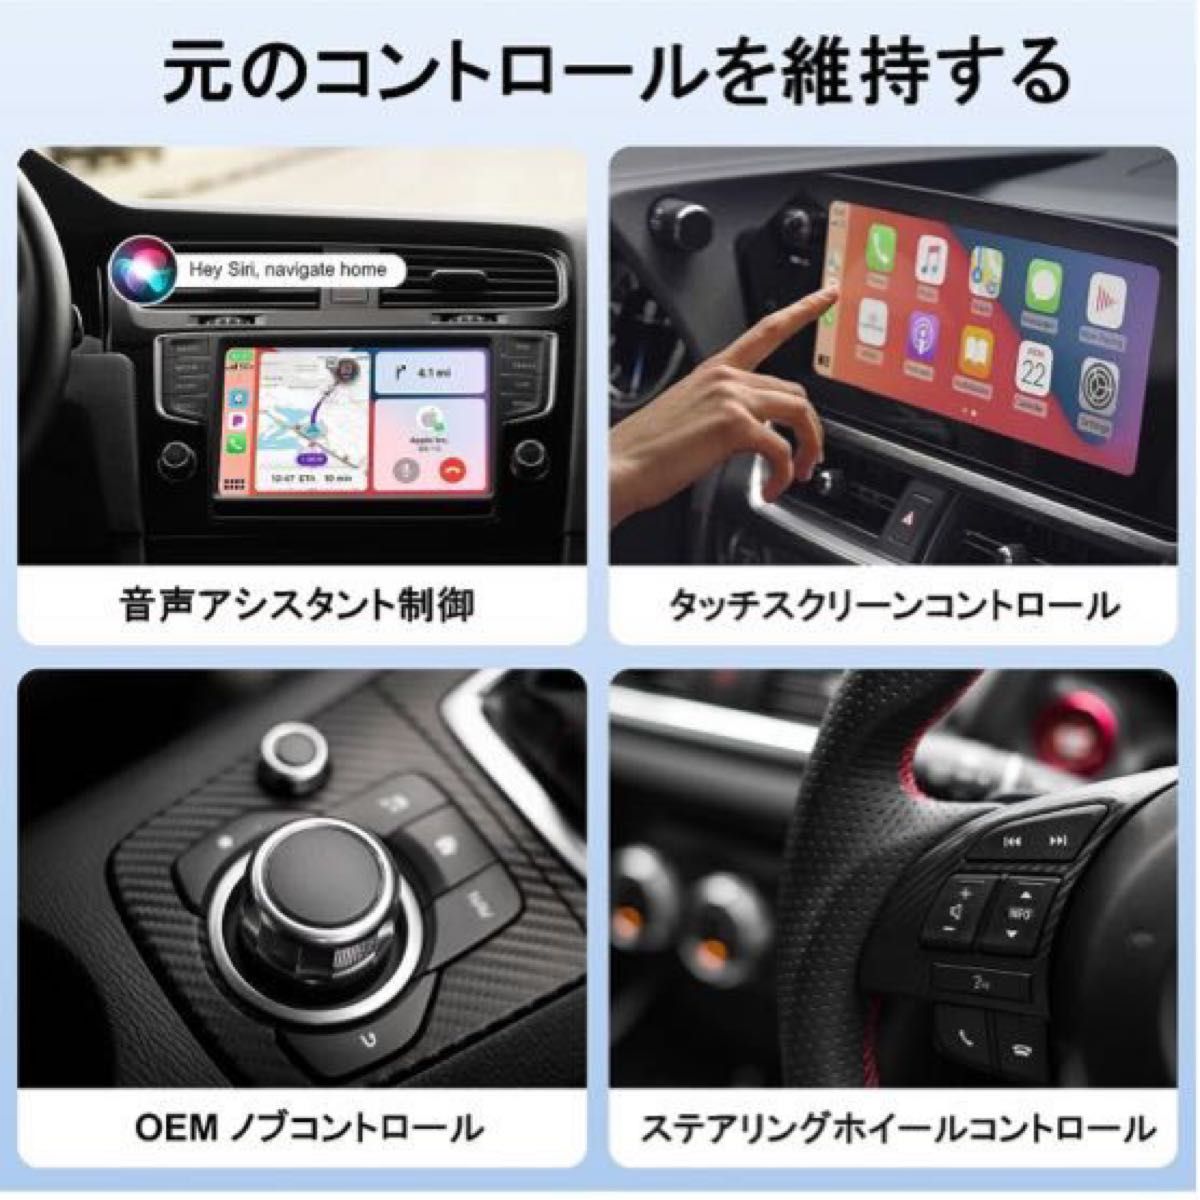 ワイヤレス CarPlay アダプター無線化 カープレイwirelessアダプター プラグ&プレイ最新人気モデル即日発送致します。